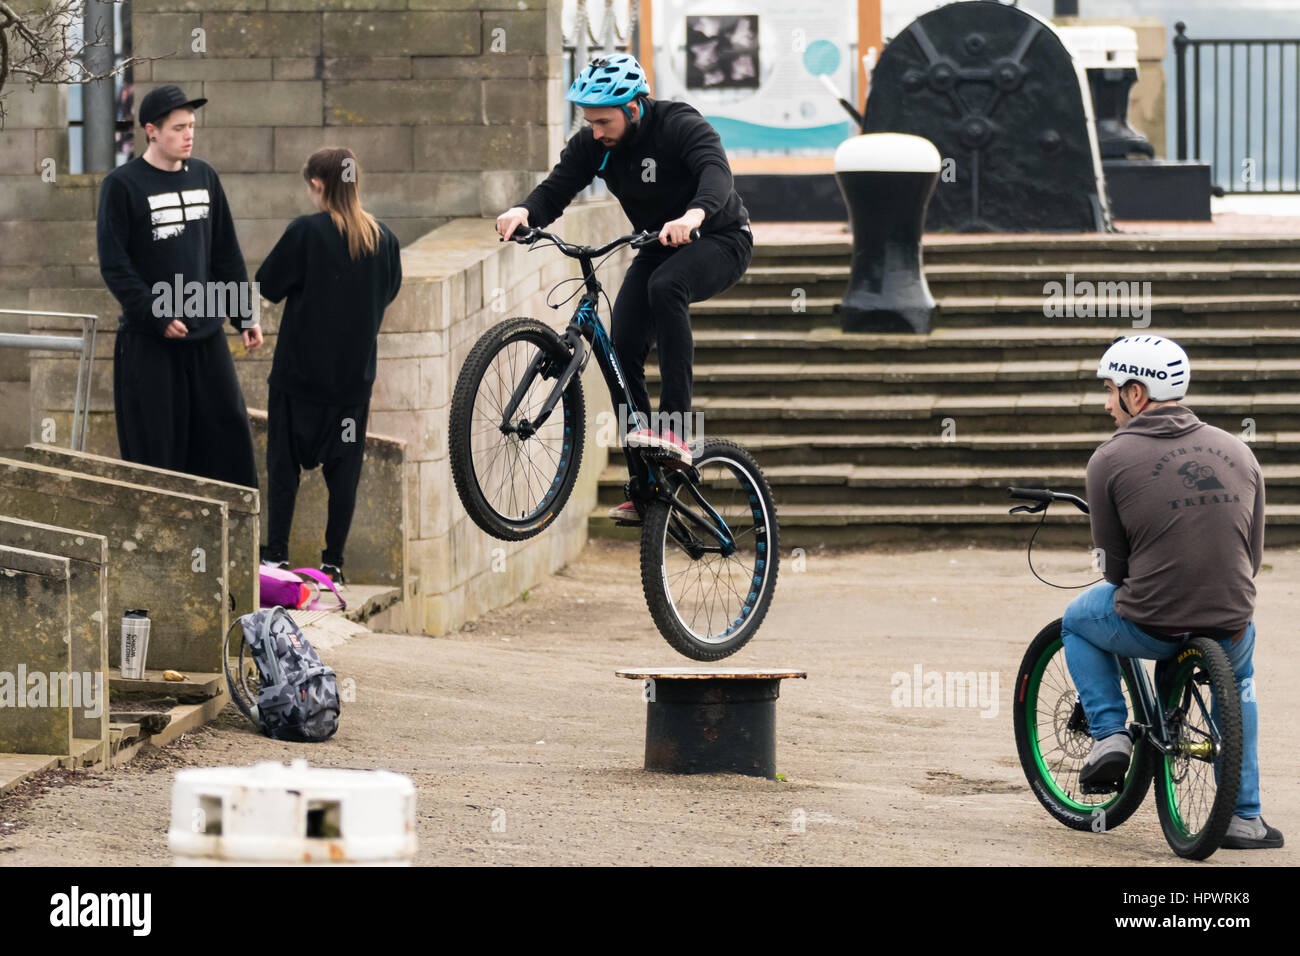 Cardiff Wales, Regno Unito - 18 Febbraio 2017: Bici piloti di eseguire trucchi su arredo urbano. Giovani uomini fanno salti di divertimento con gli amici intorno permanente Foto Stock